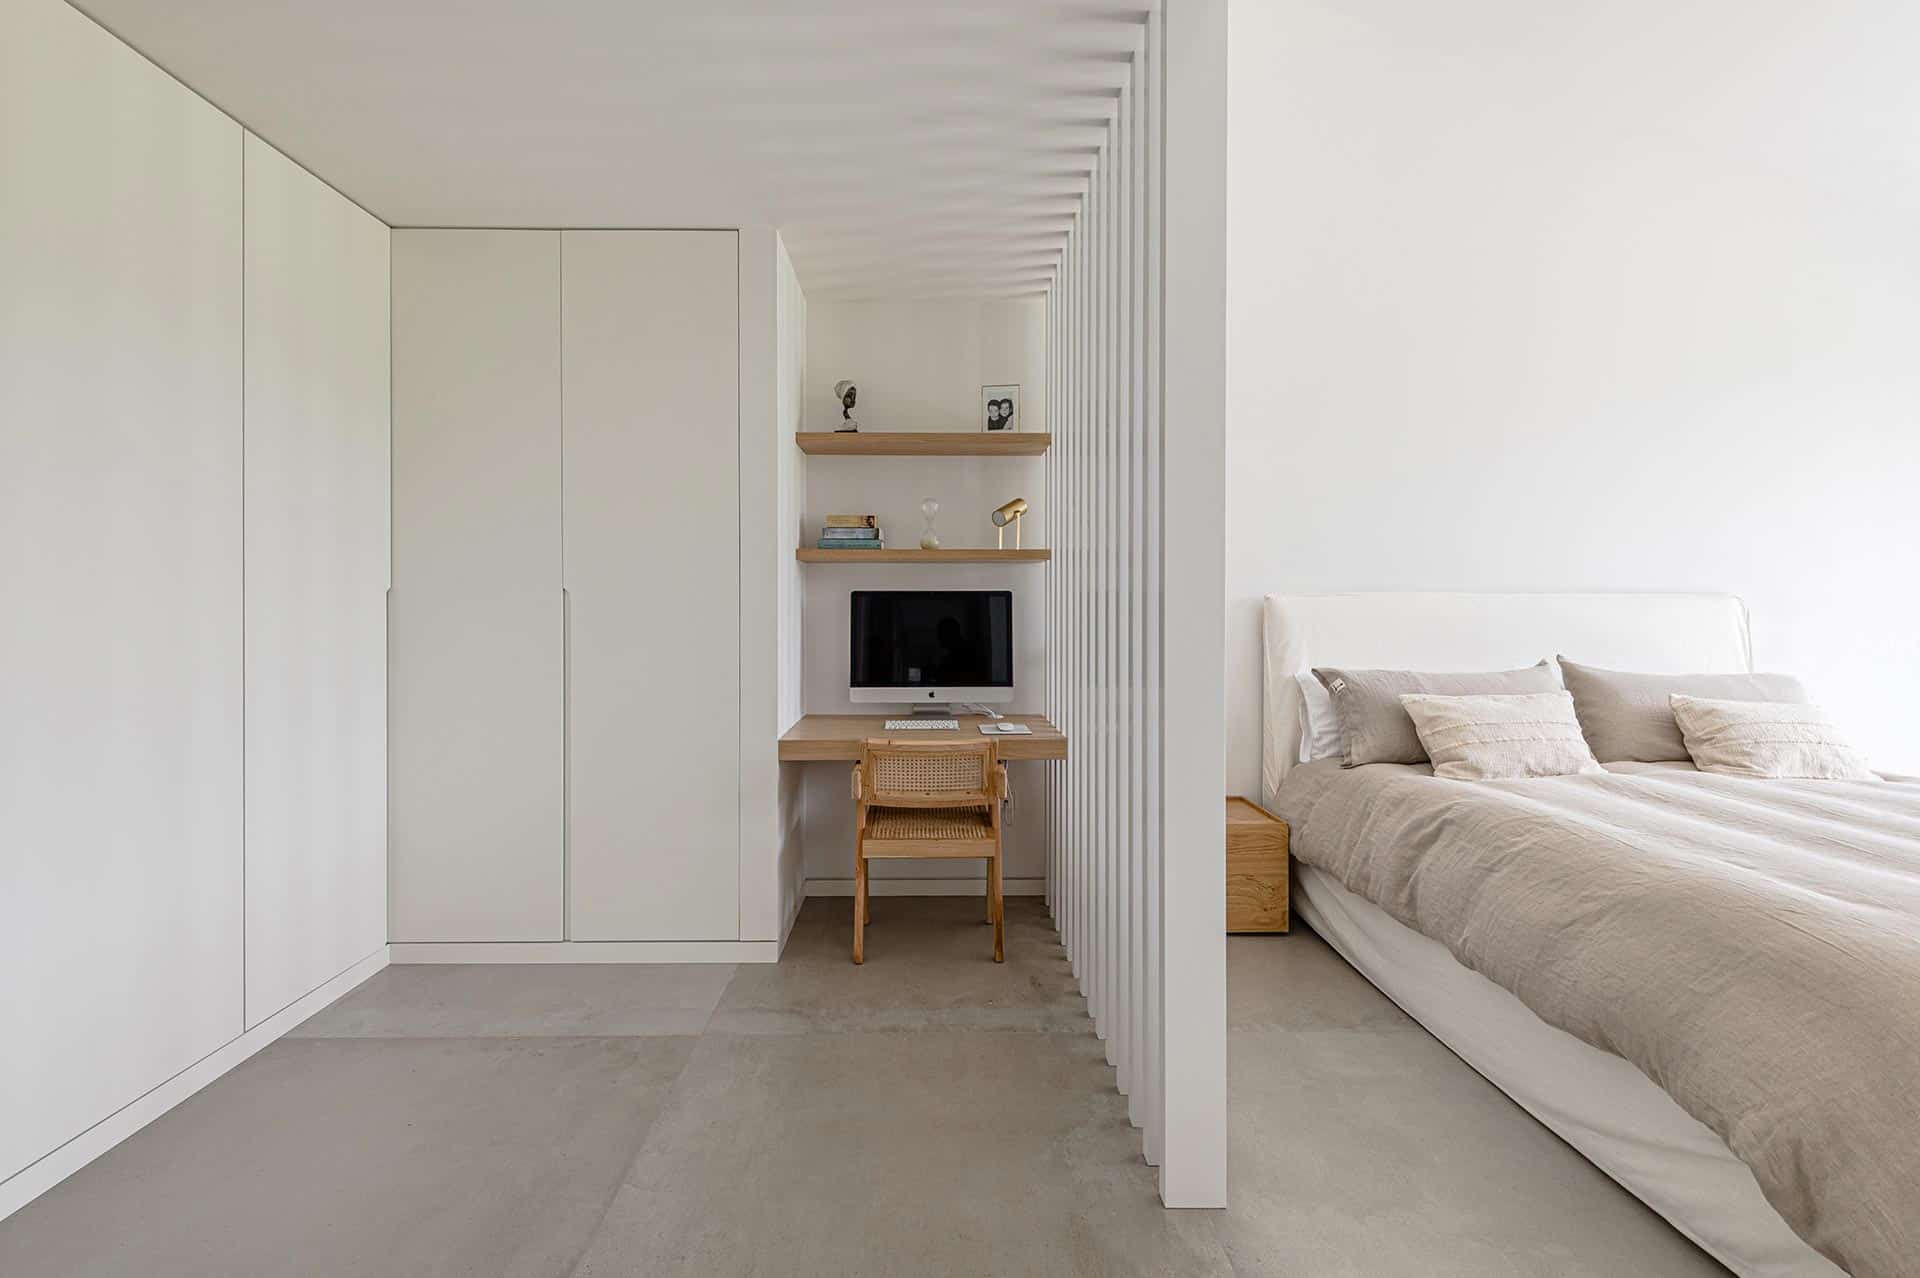 Vestidor de vivienda minimalista diseñada por Moah Arquitectos en Suesa. Cantabria.